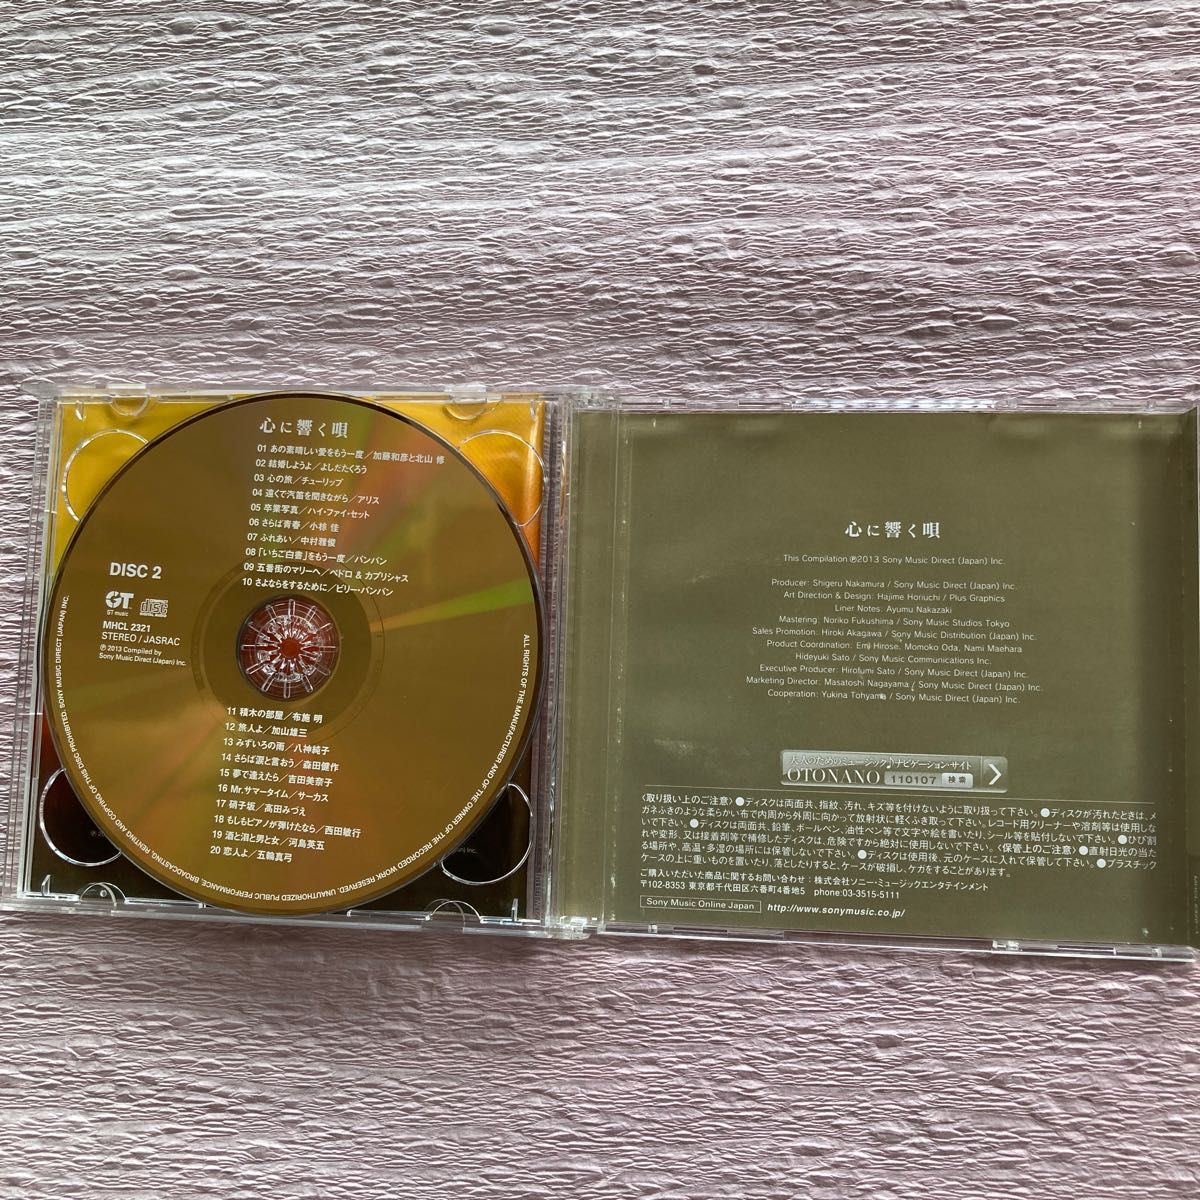 キキ17 森田公一とトップギャラン 青春時代 EP盤レコード - 邦楽